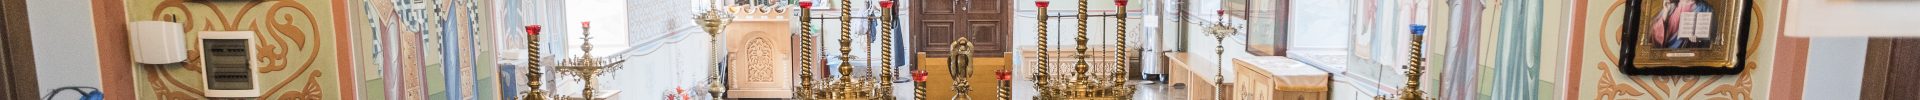 Расписание богослужений Преображенского храма деревни Спас-Каменка на ЯНВАРЬ 2022 года